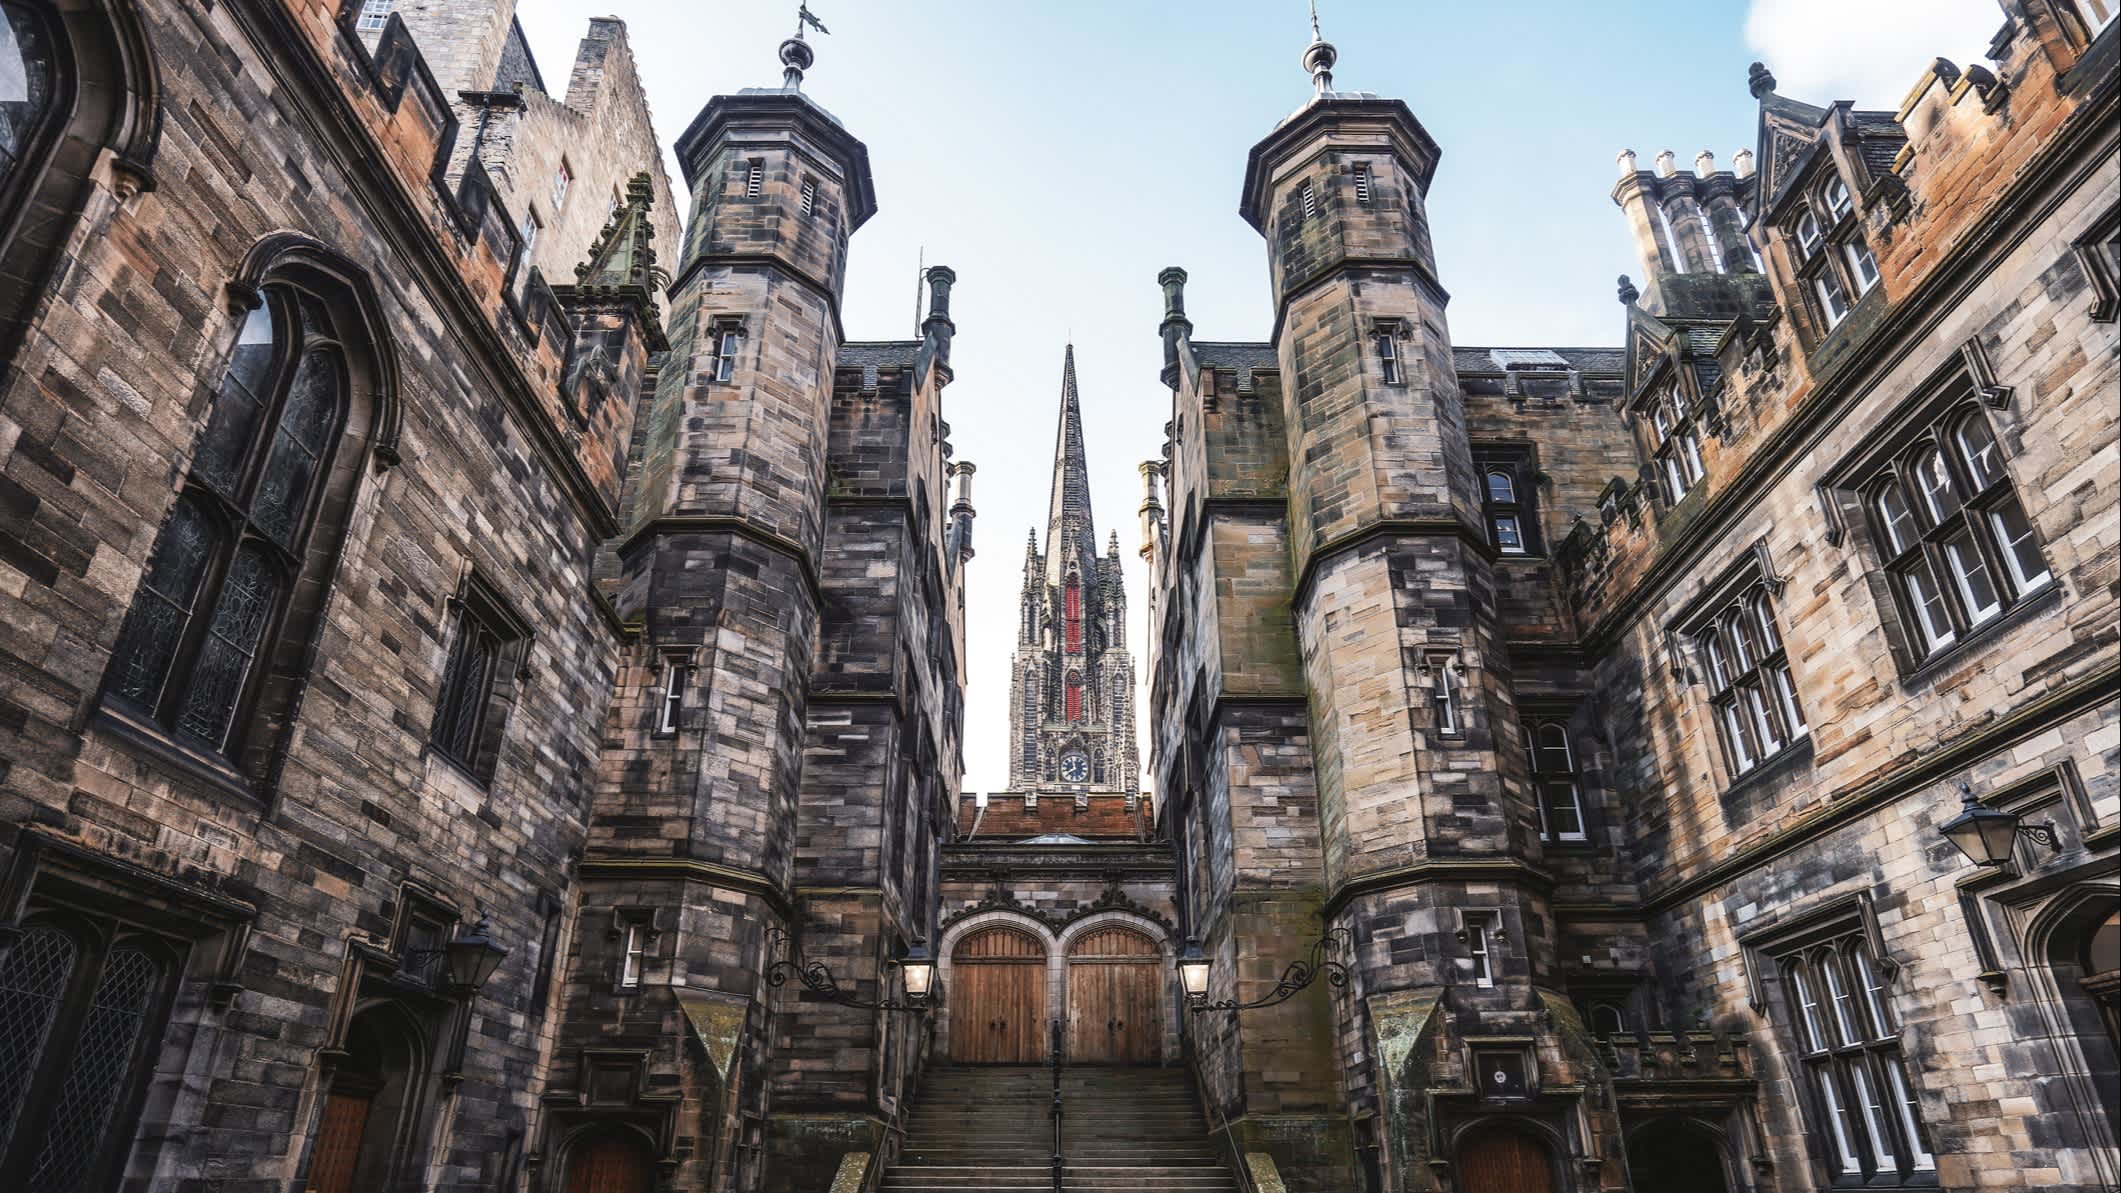 School of Divinity in Edinburgh, die aussieht wie die Hogwarts School of Witchcraft aus Harry Potter.